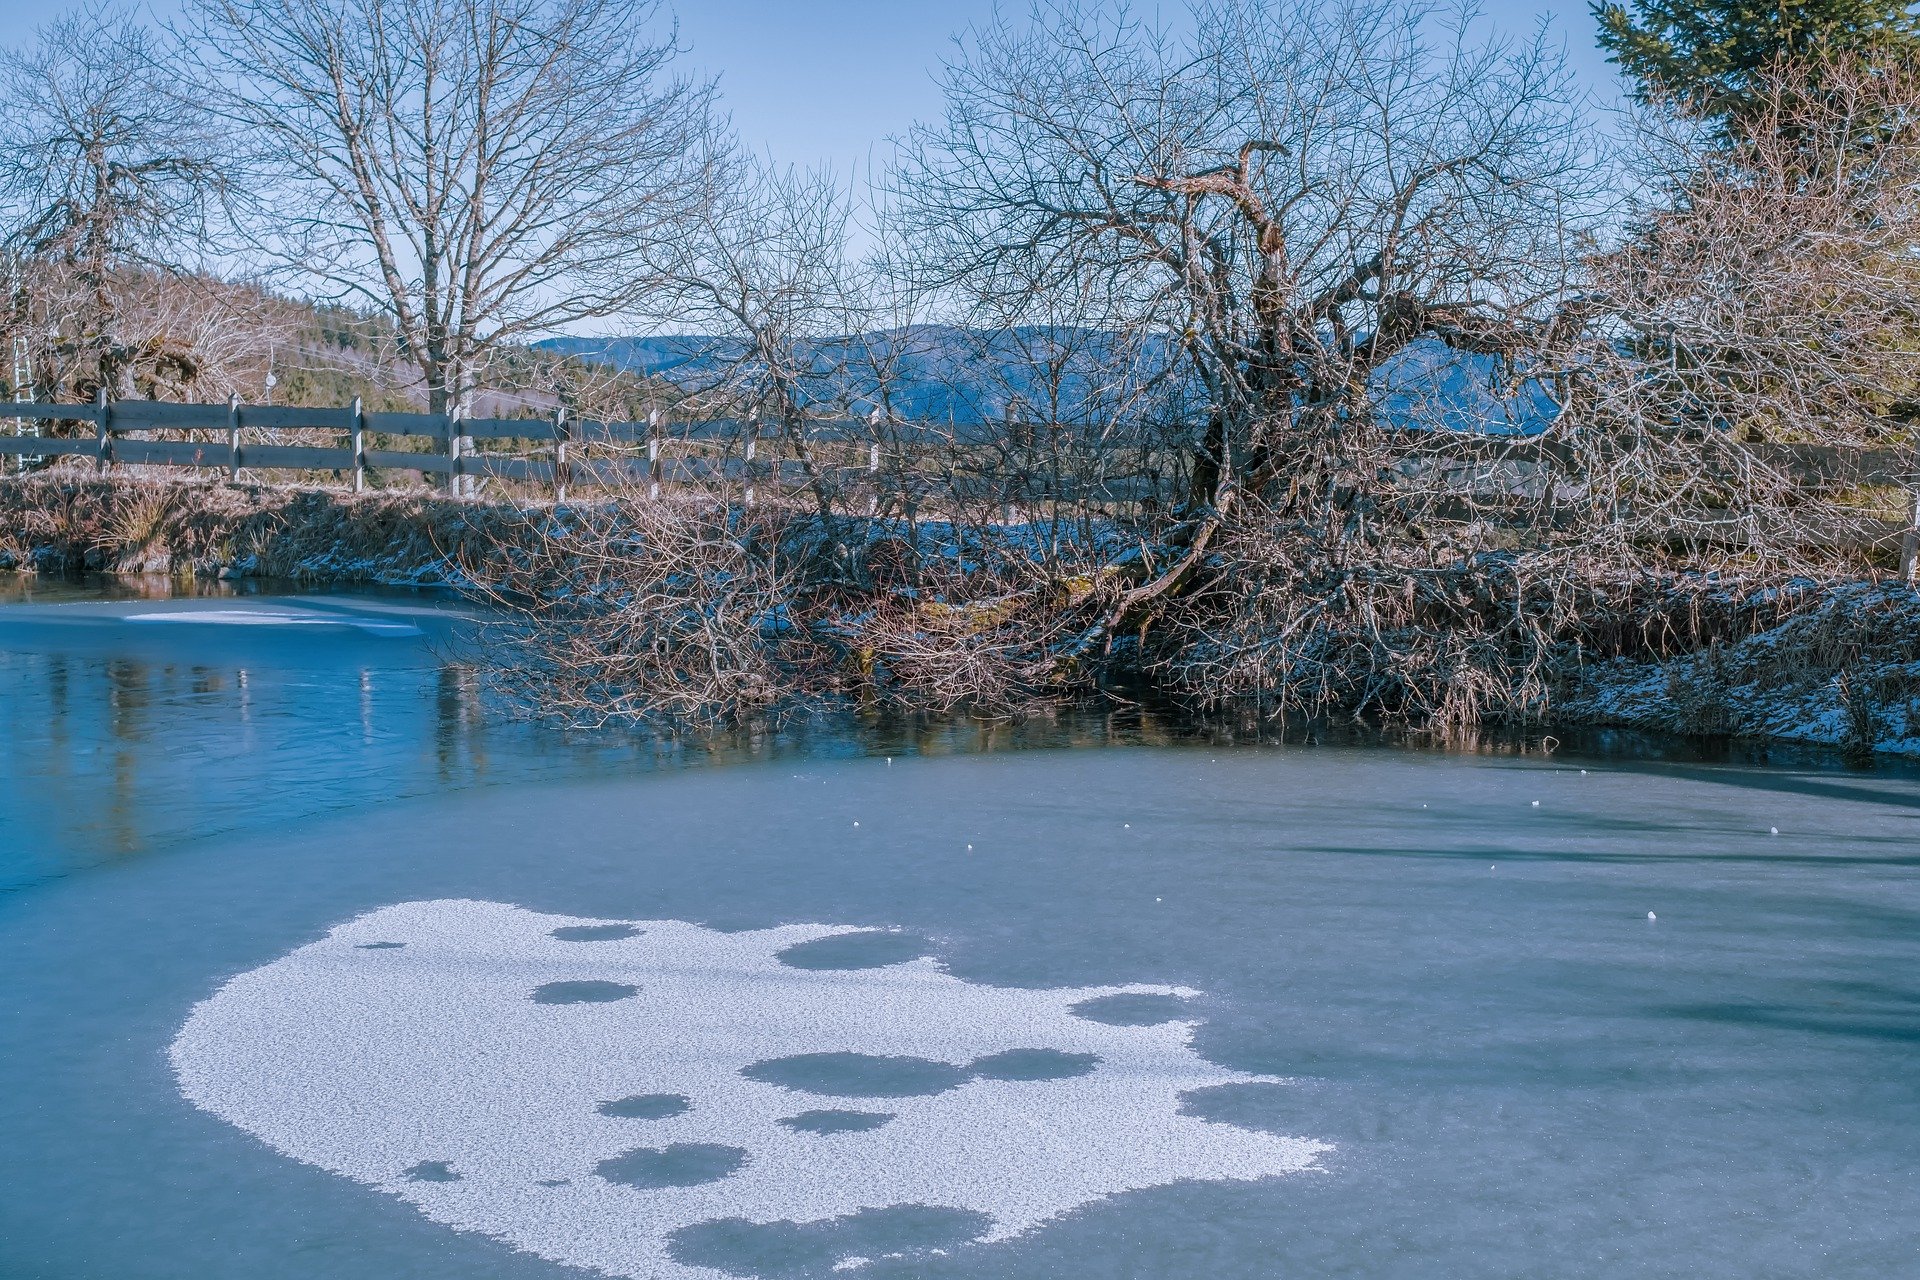 Winter frozen pond | Source: Pixabay